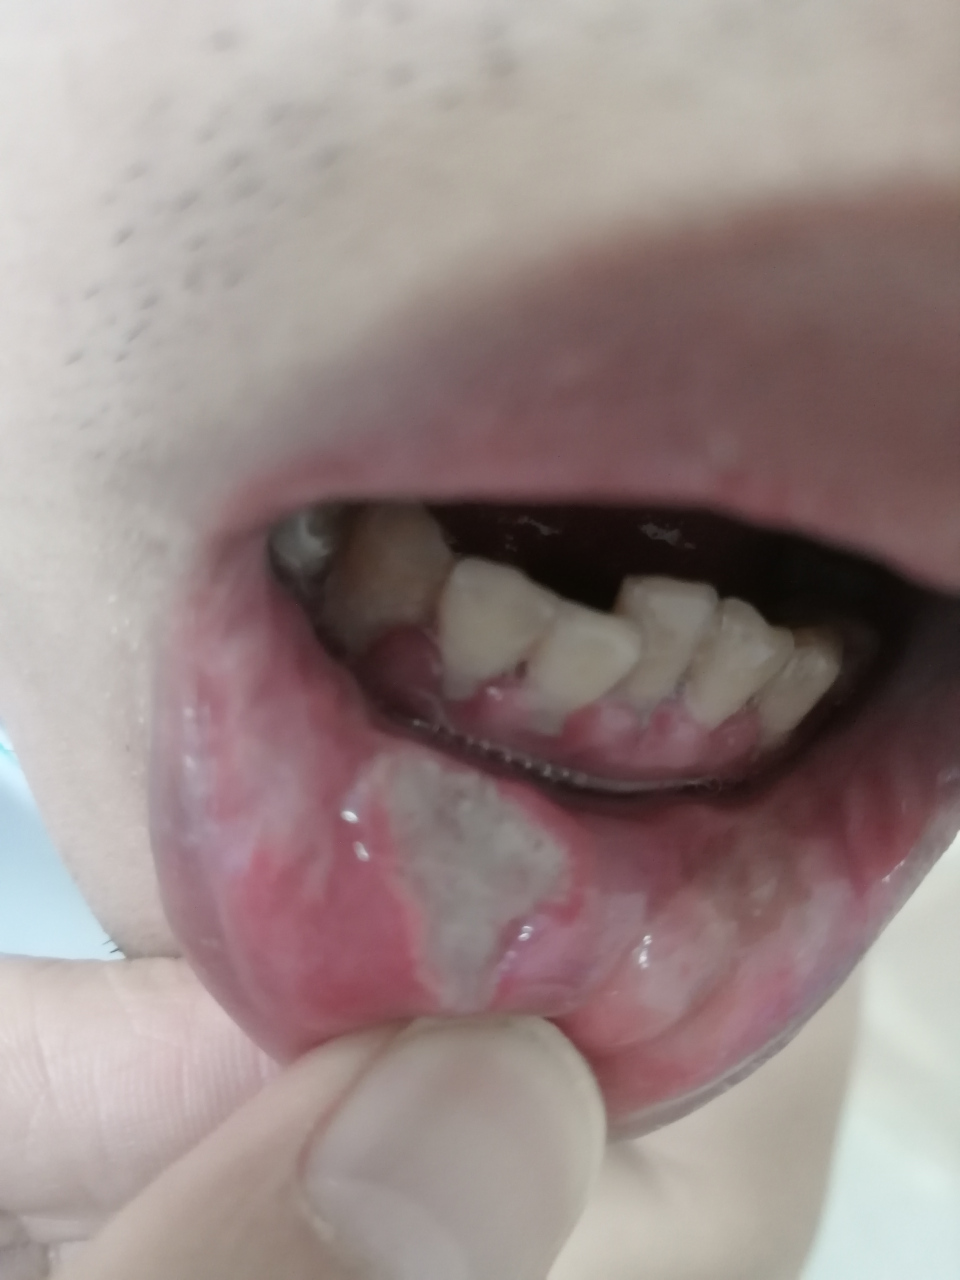 口腔溃疡图 恶性图片